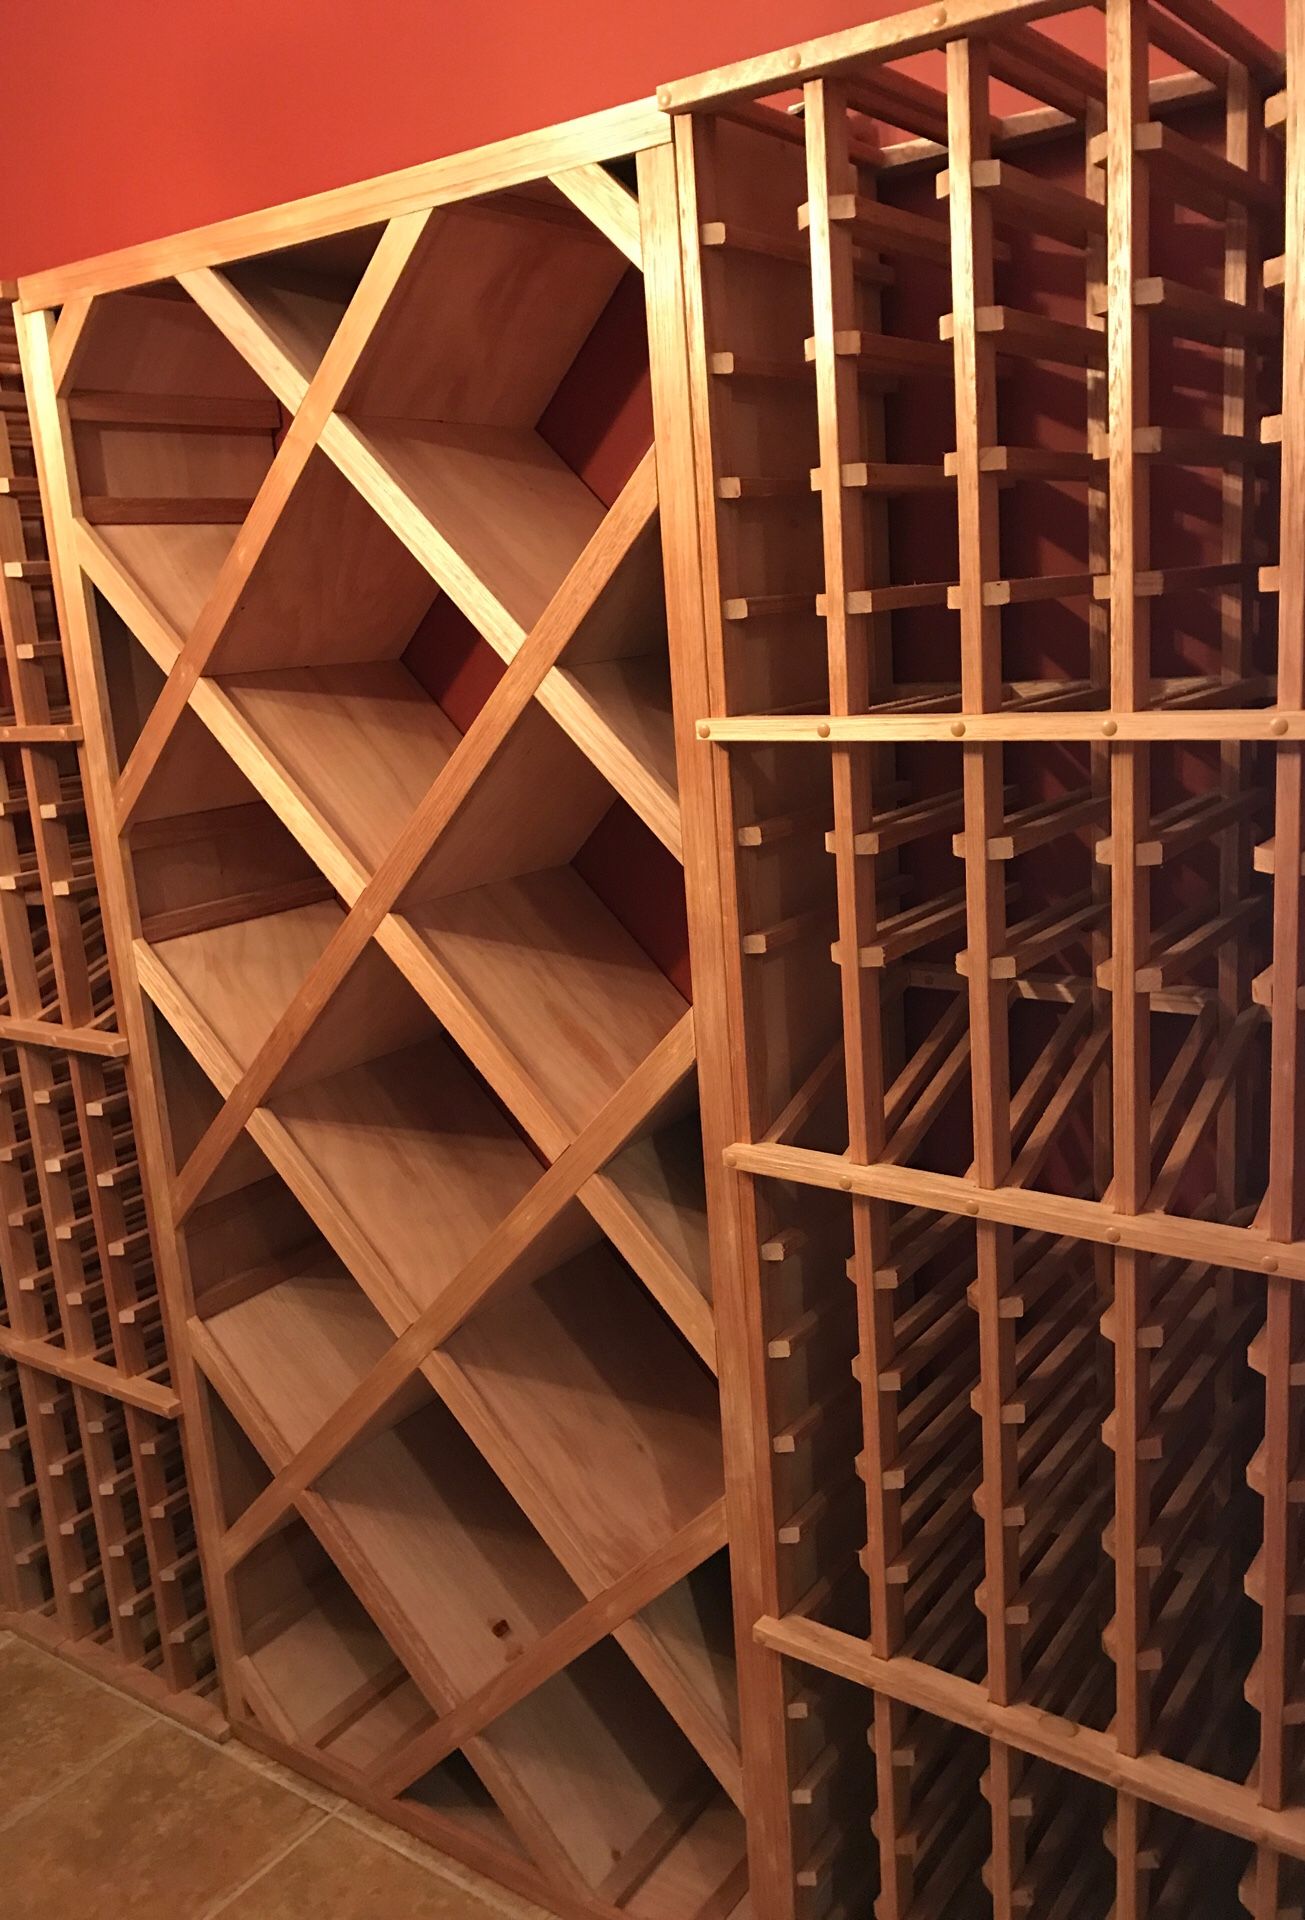 Wine racks, will hold around 500 bottles of wine.